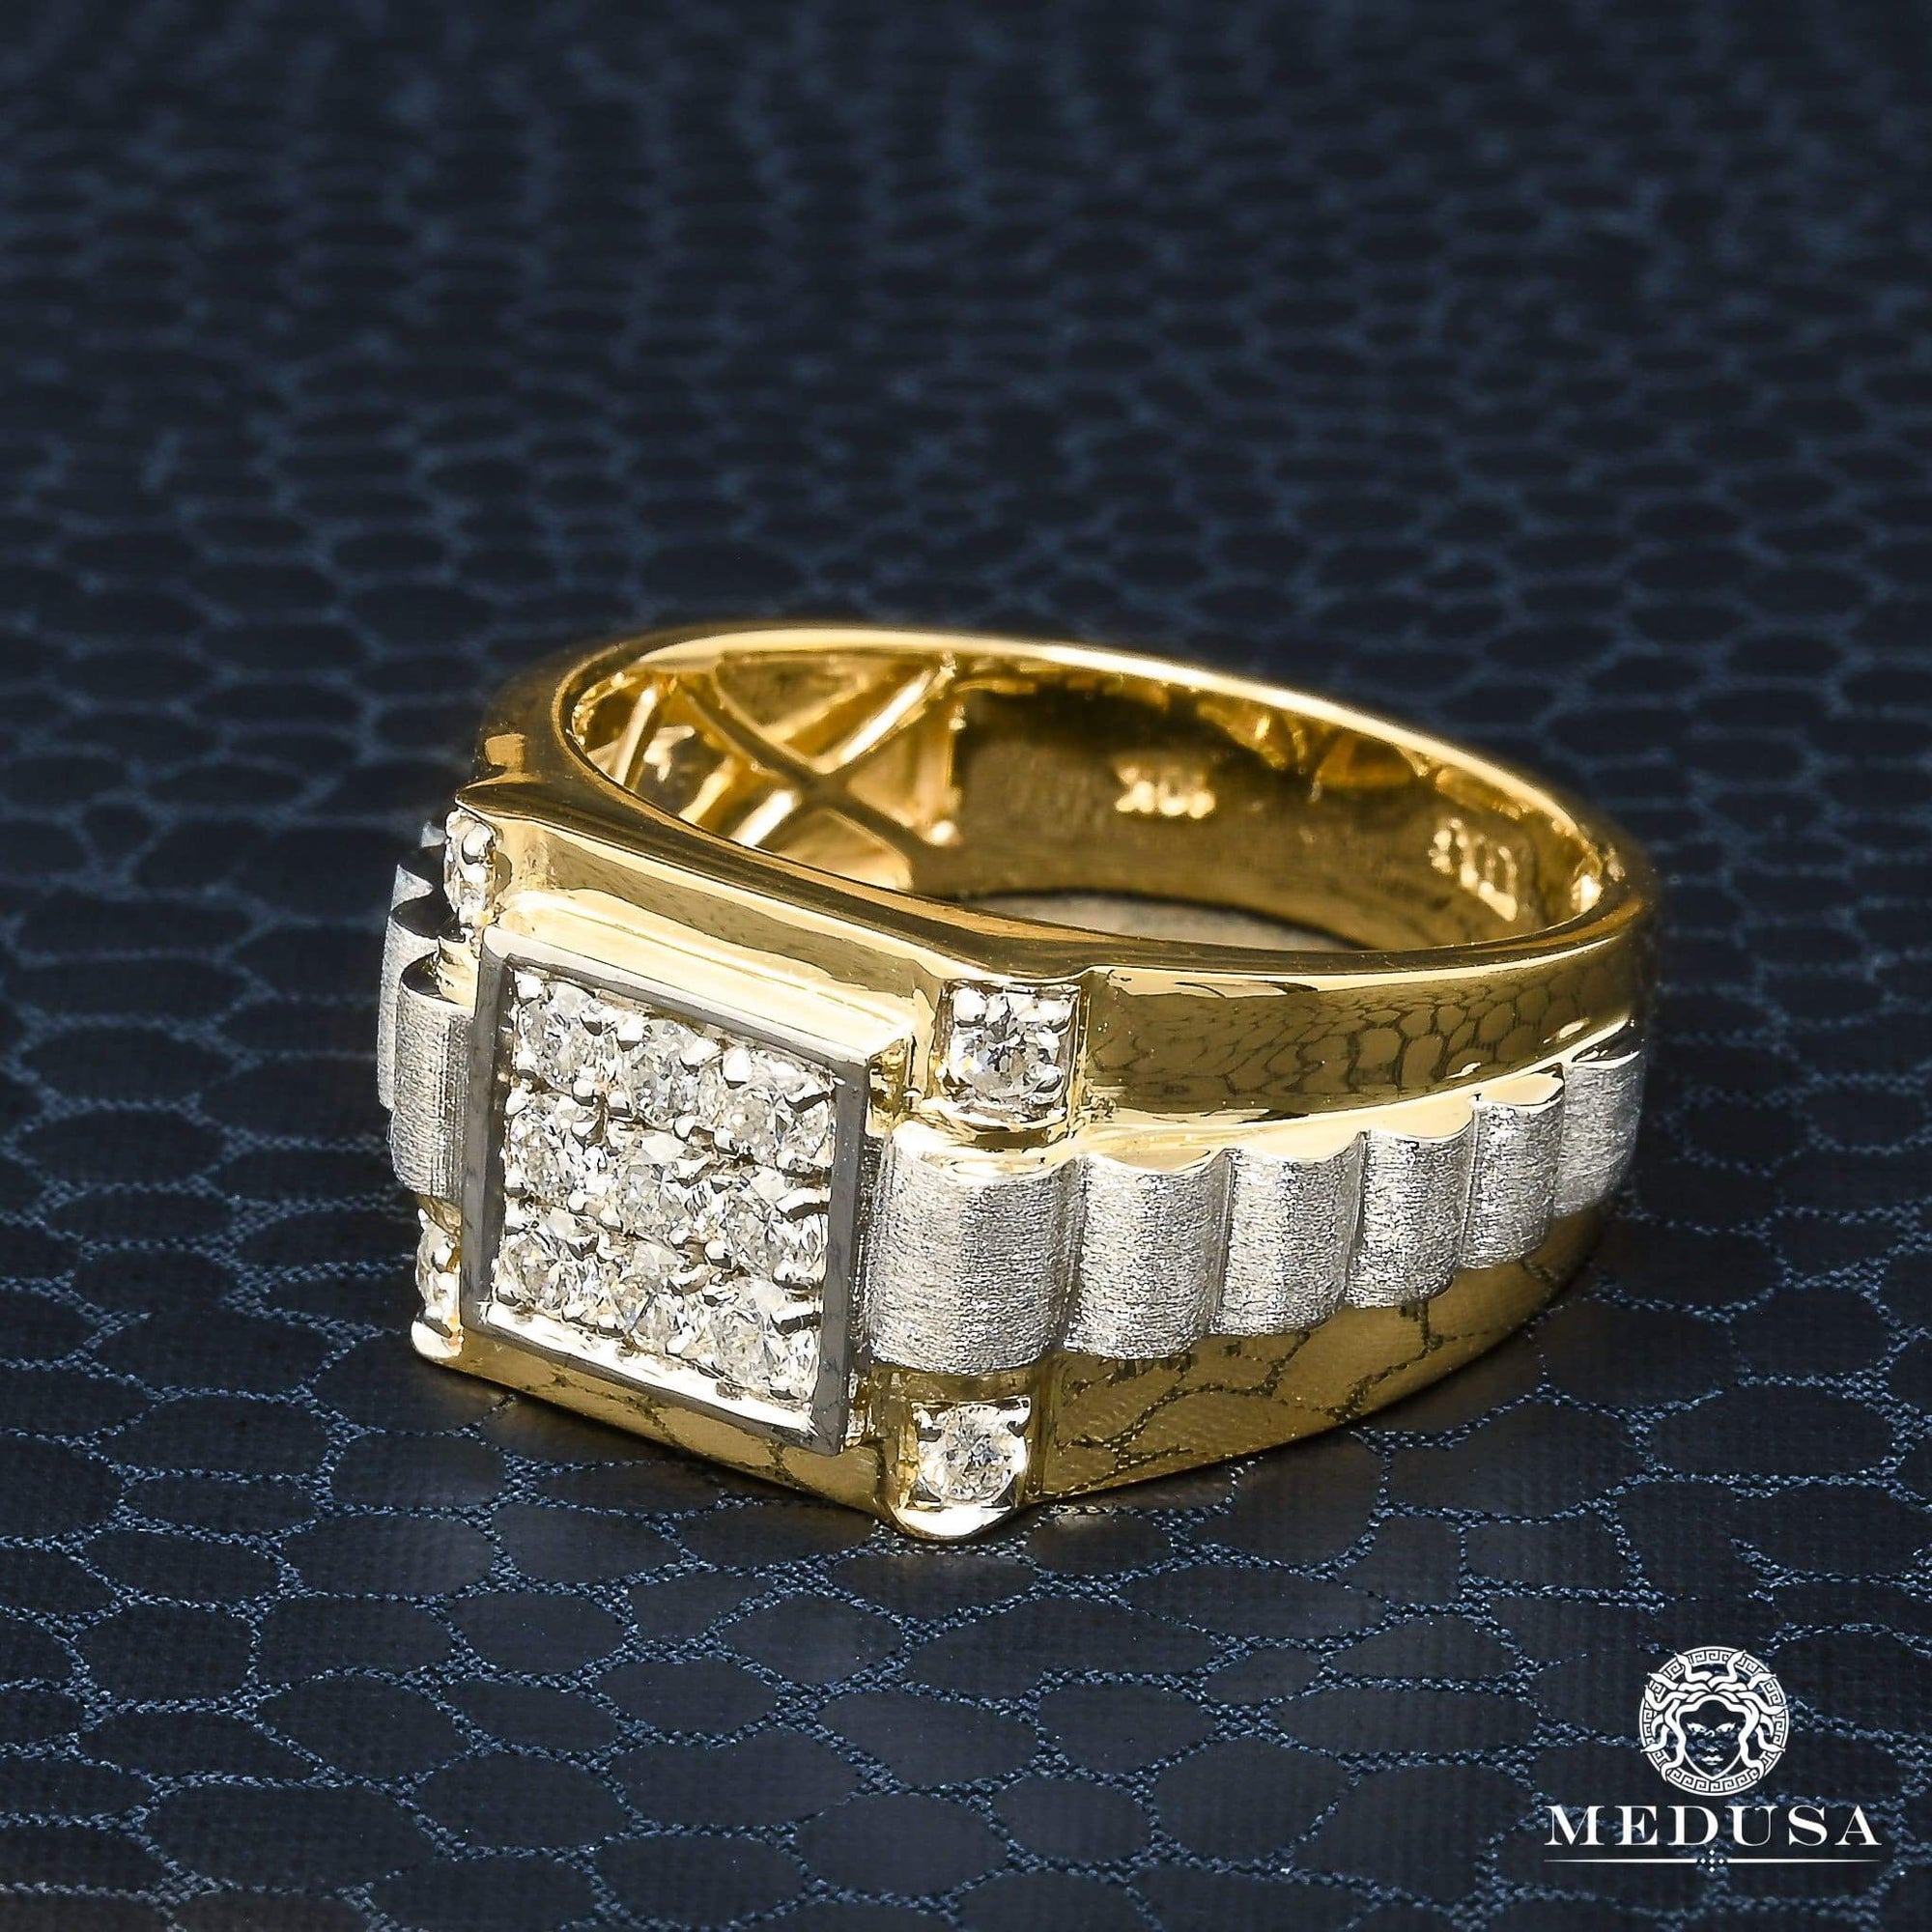 10K Gold Diamond Ring | Square D2 Men's Ring - 0.50CT Diamond / 2 Tone Gold